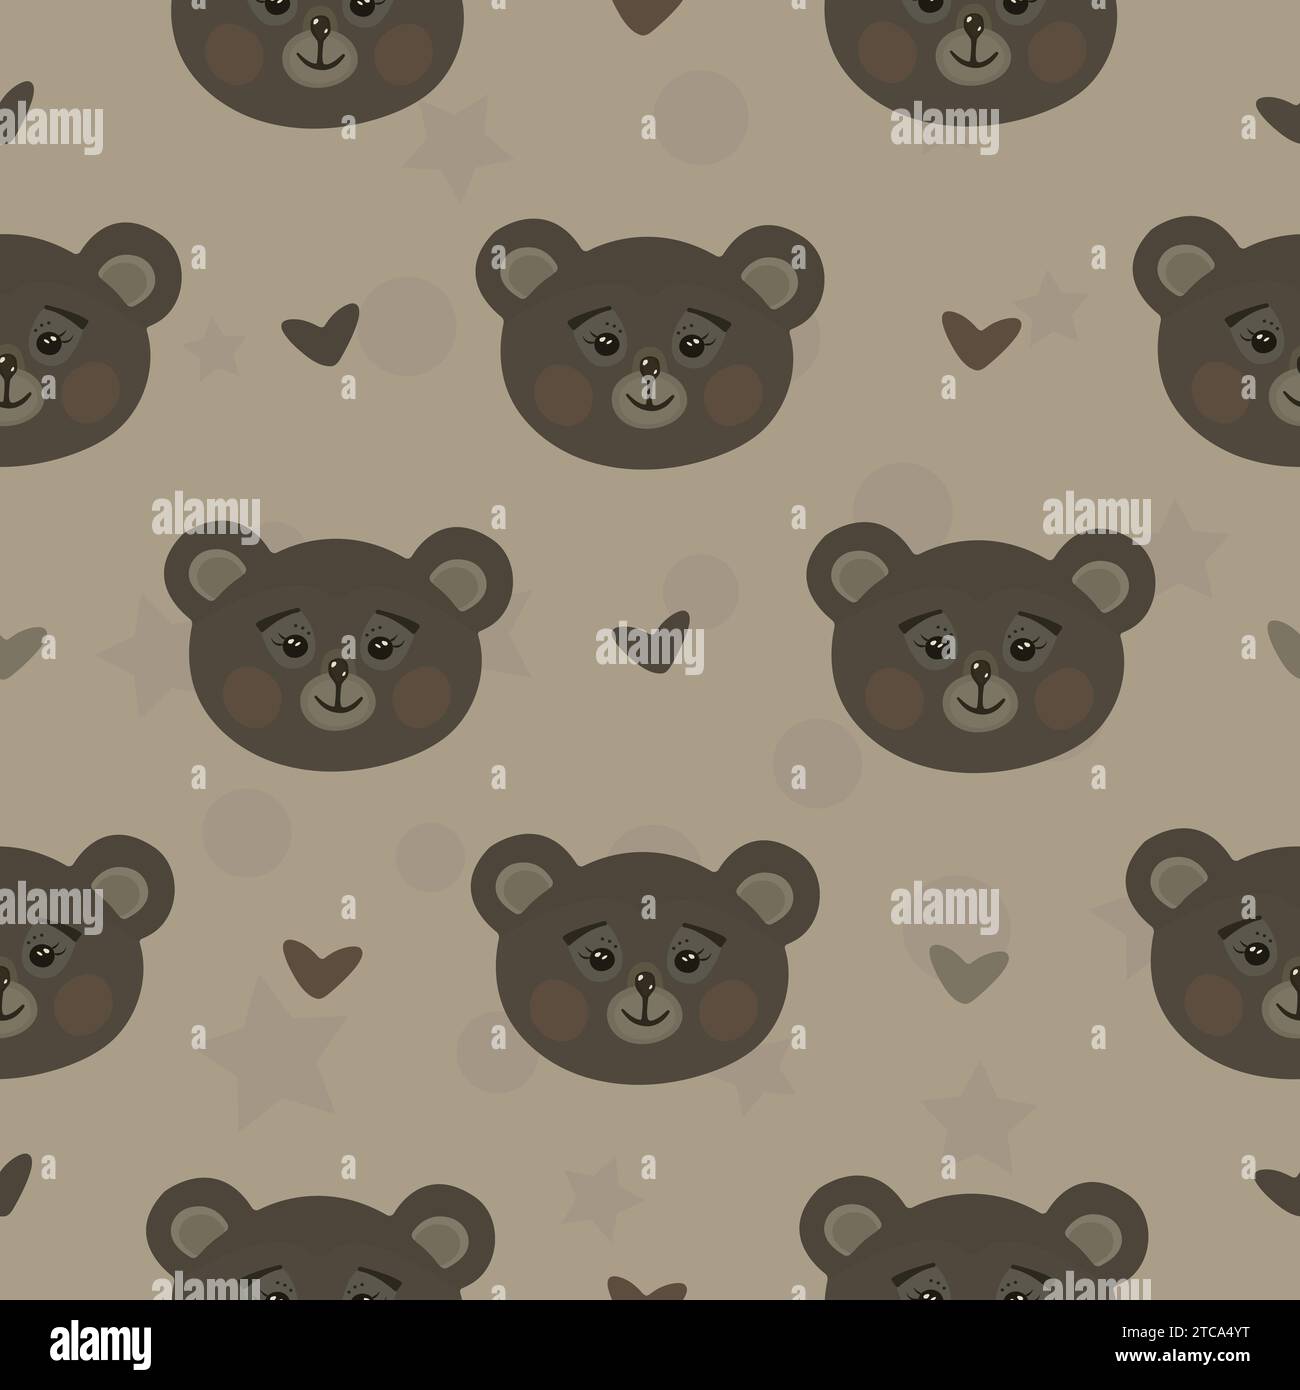 Cute brown bears, scandinavian design, vector seamless pattern, endless background Stock Vector